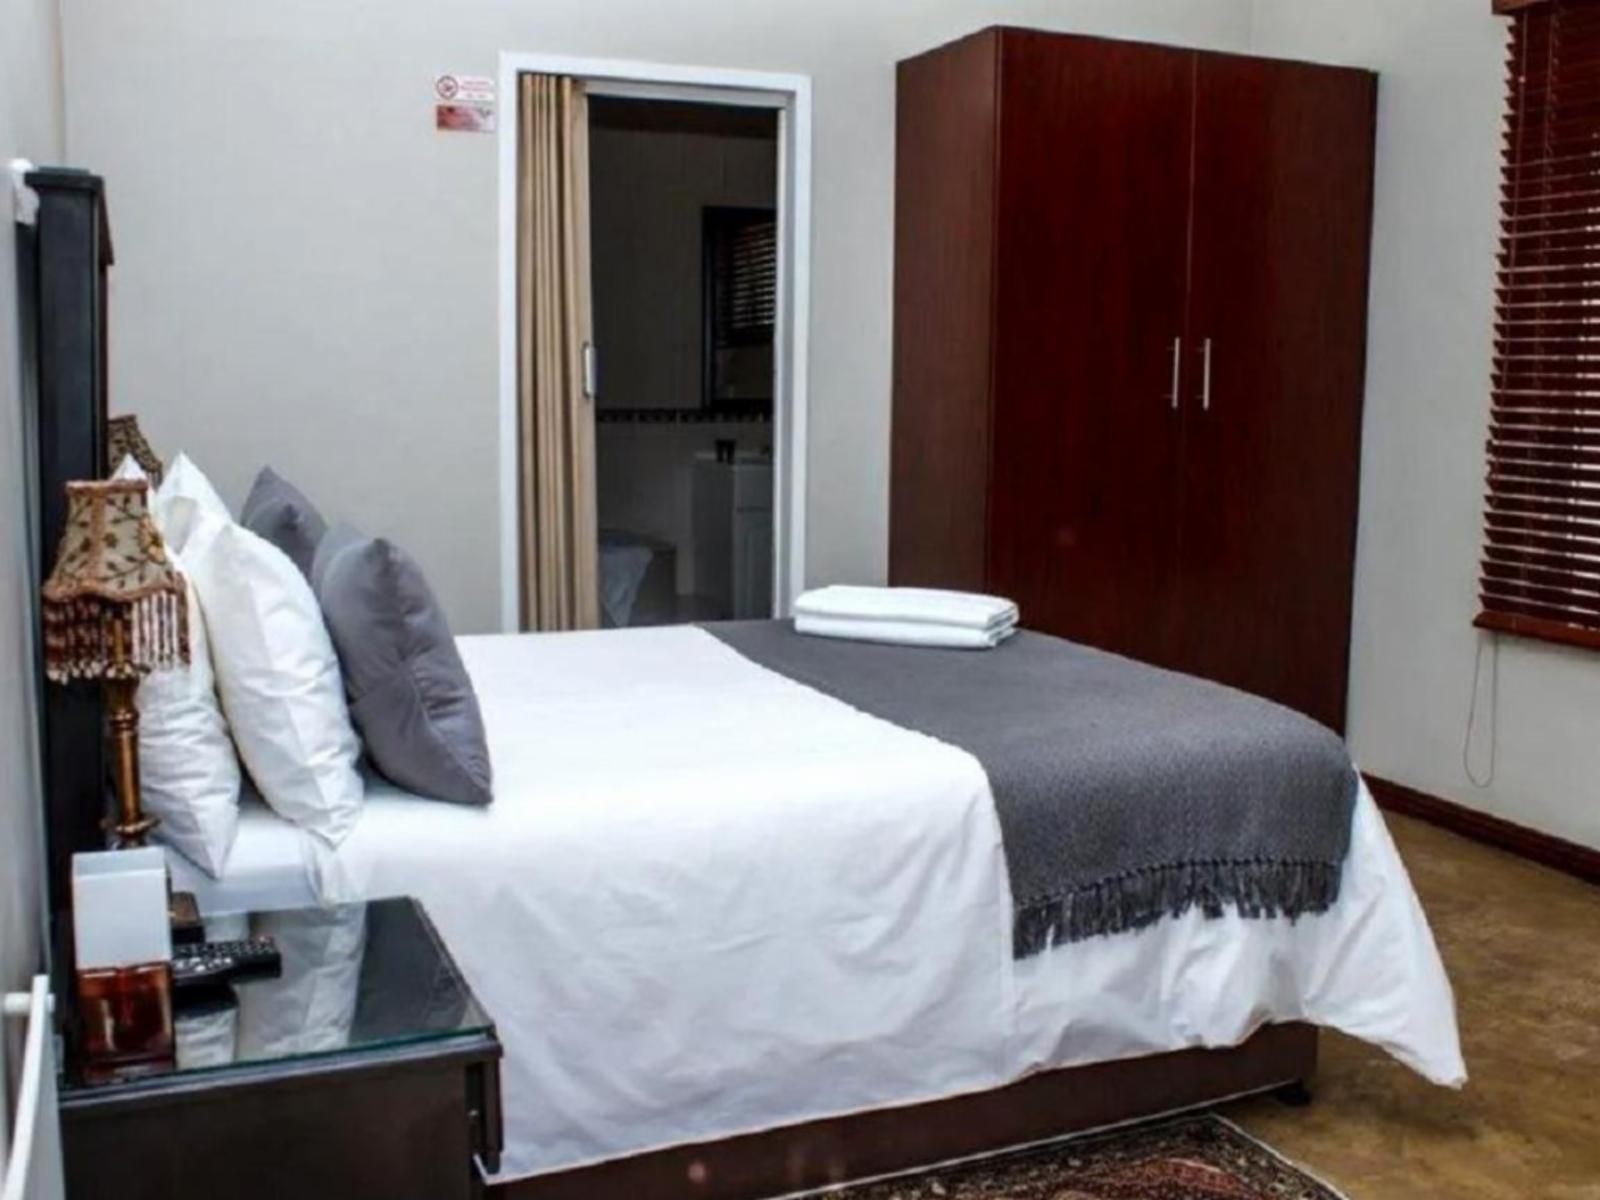 Monacco Guest House Bronkhorstspruit Gauteng South Africa Bedroom